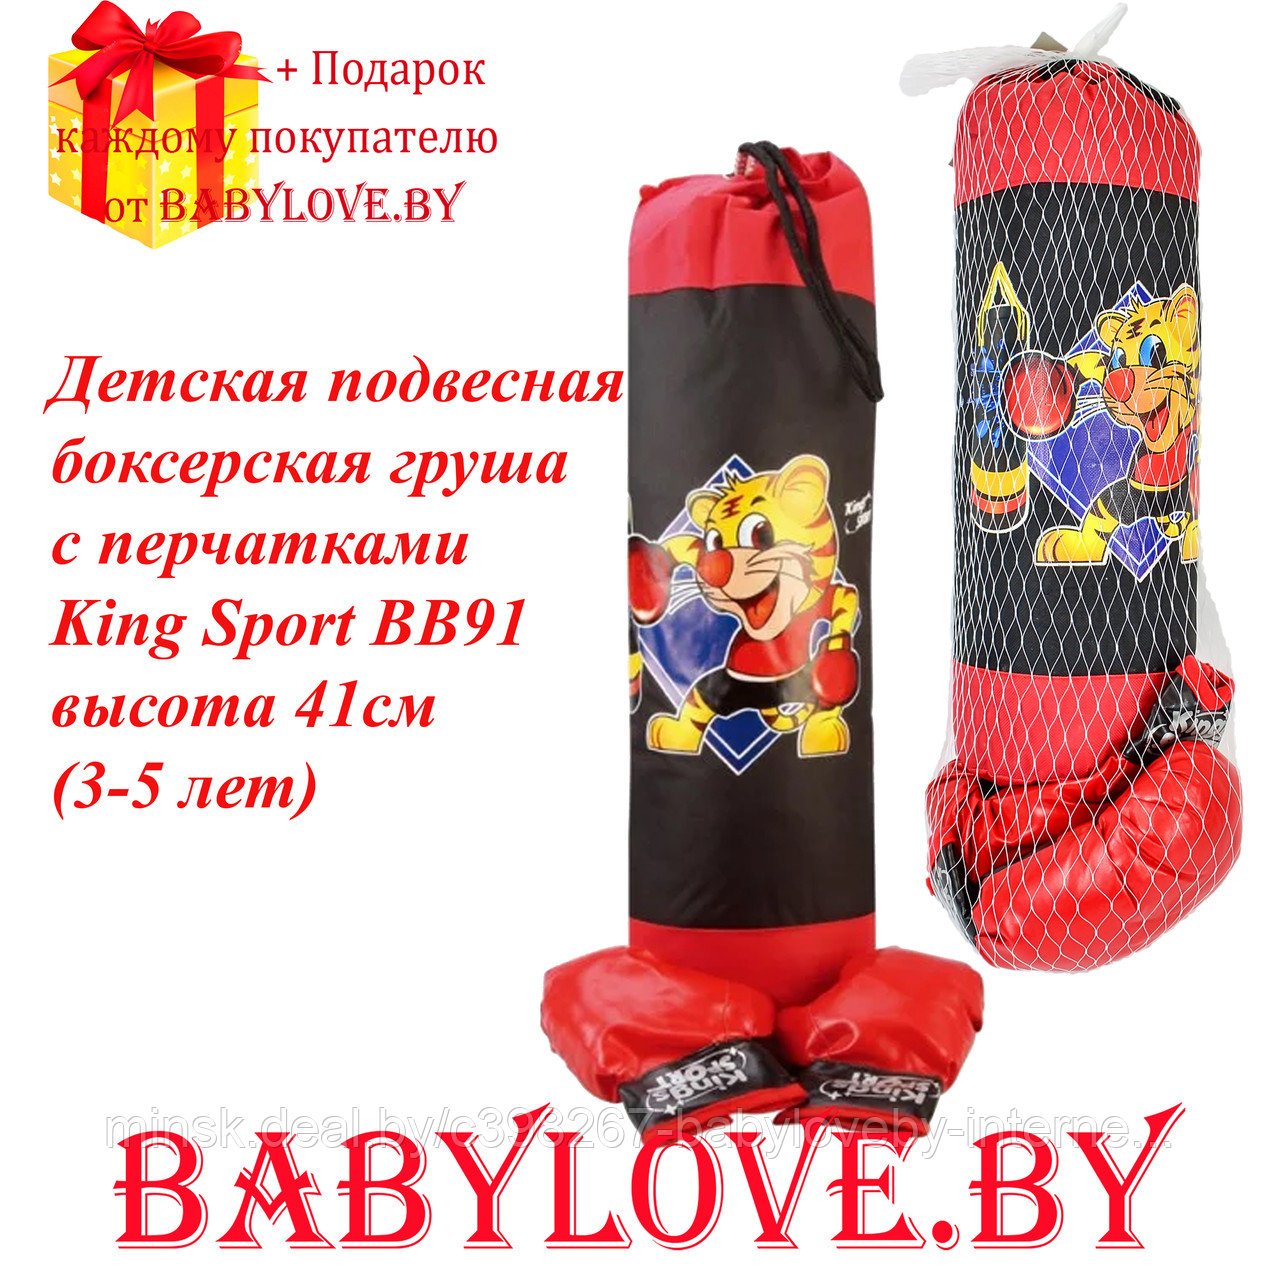 Детская подвесная боксерская груша с перчатками King Sport BB91 высота 41см (3-5 лет)